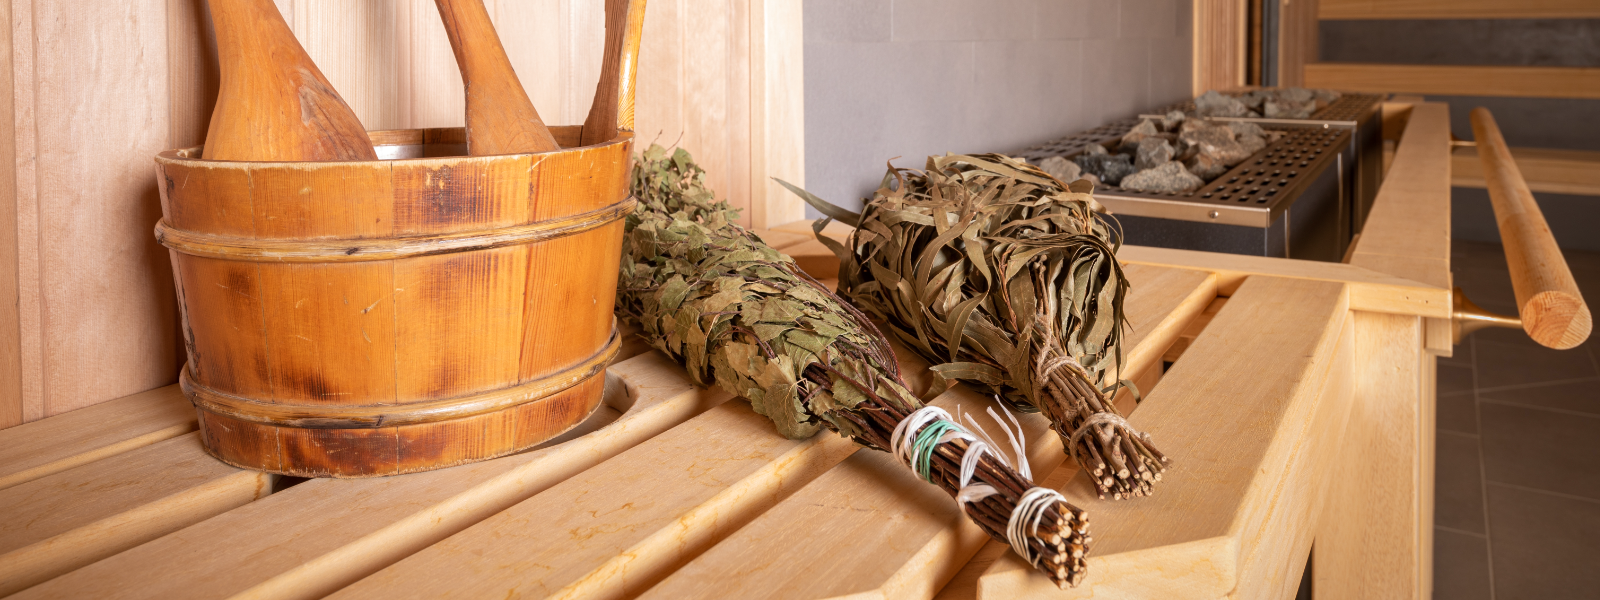 ANNE SAUN - Anne Saun tegeleb traditsiooniliste sauna- ja veeprotseduuride pakkumisega Tartu vanimas saunakompleksis.